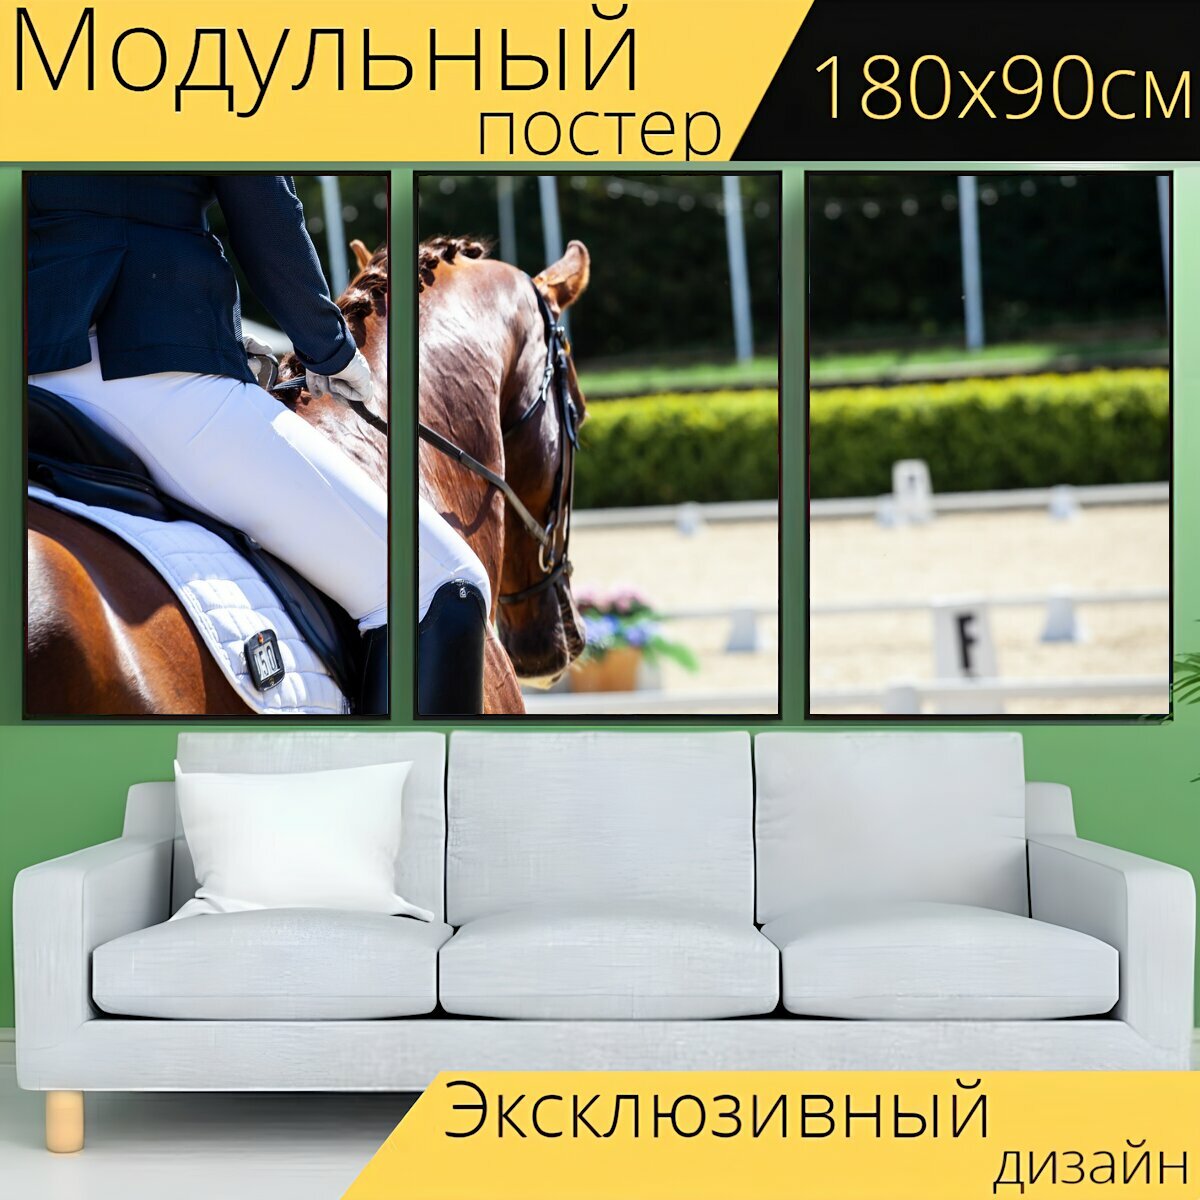 Модульный постер "Выездка, лошади, лошадь" 180 x 90 см. для интерьера